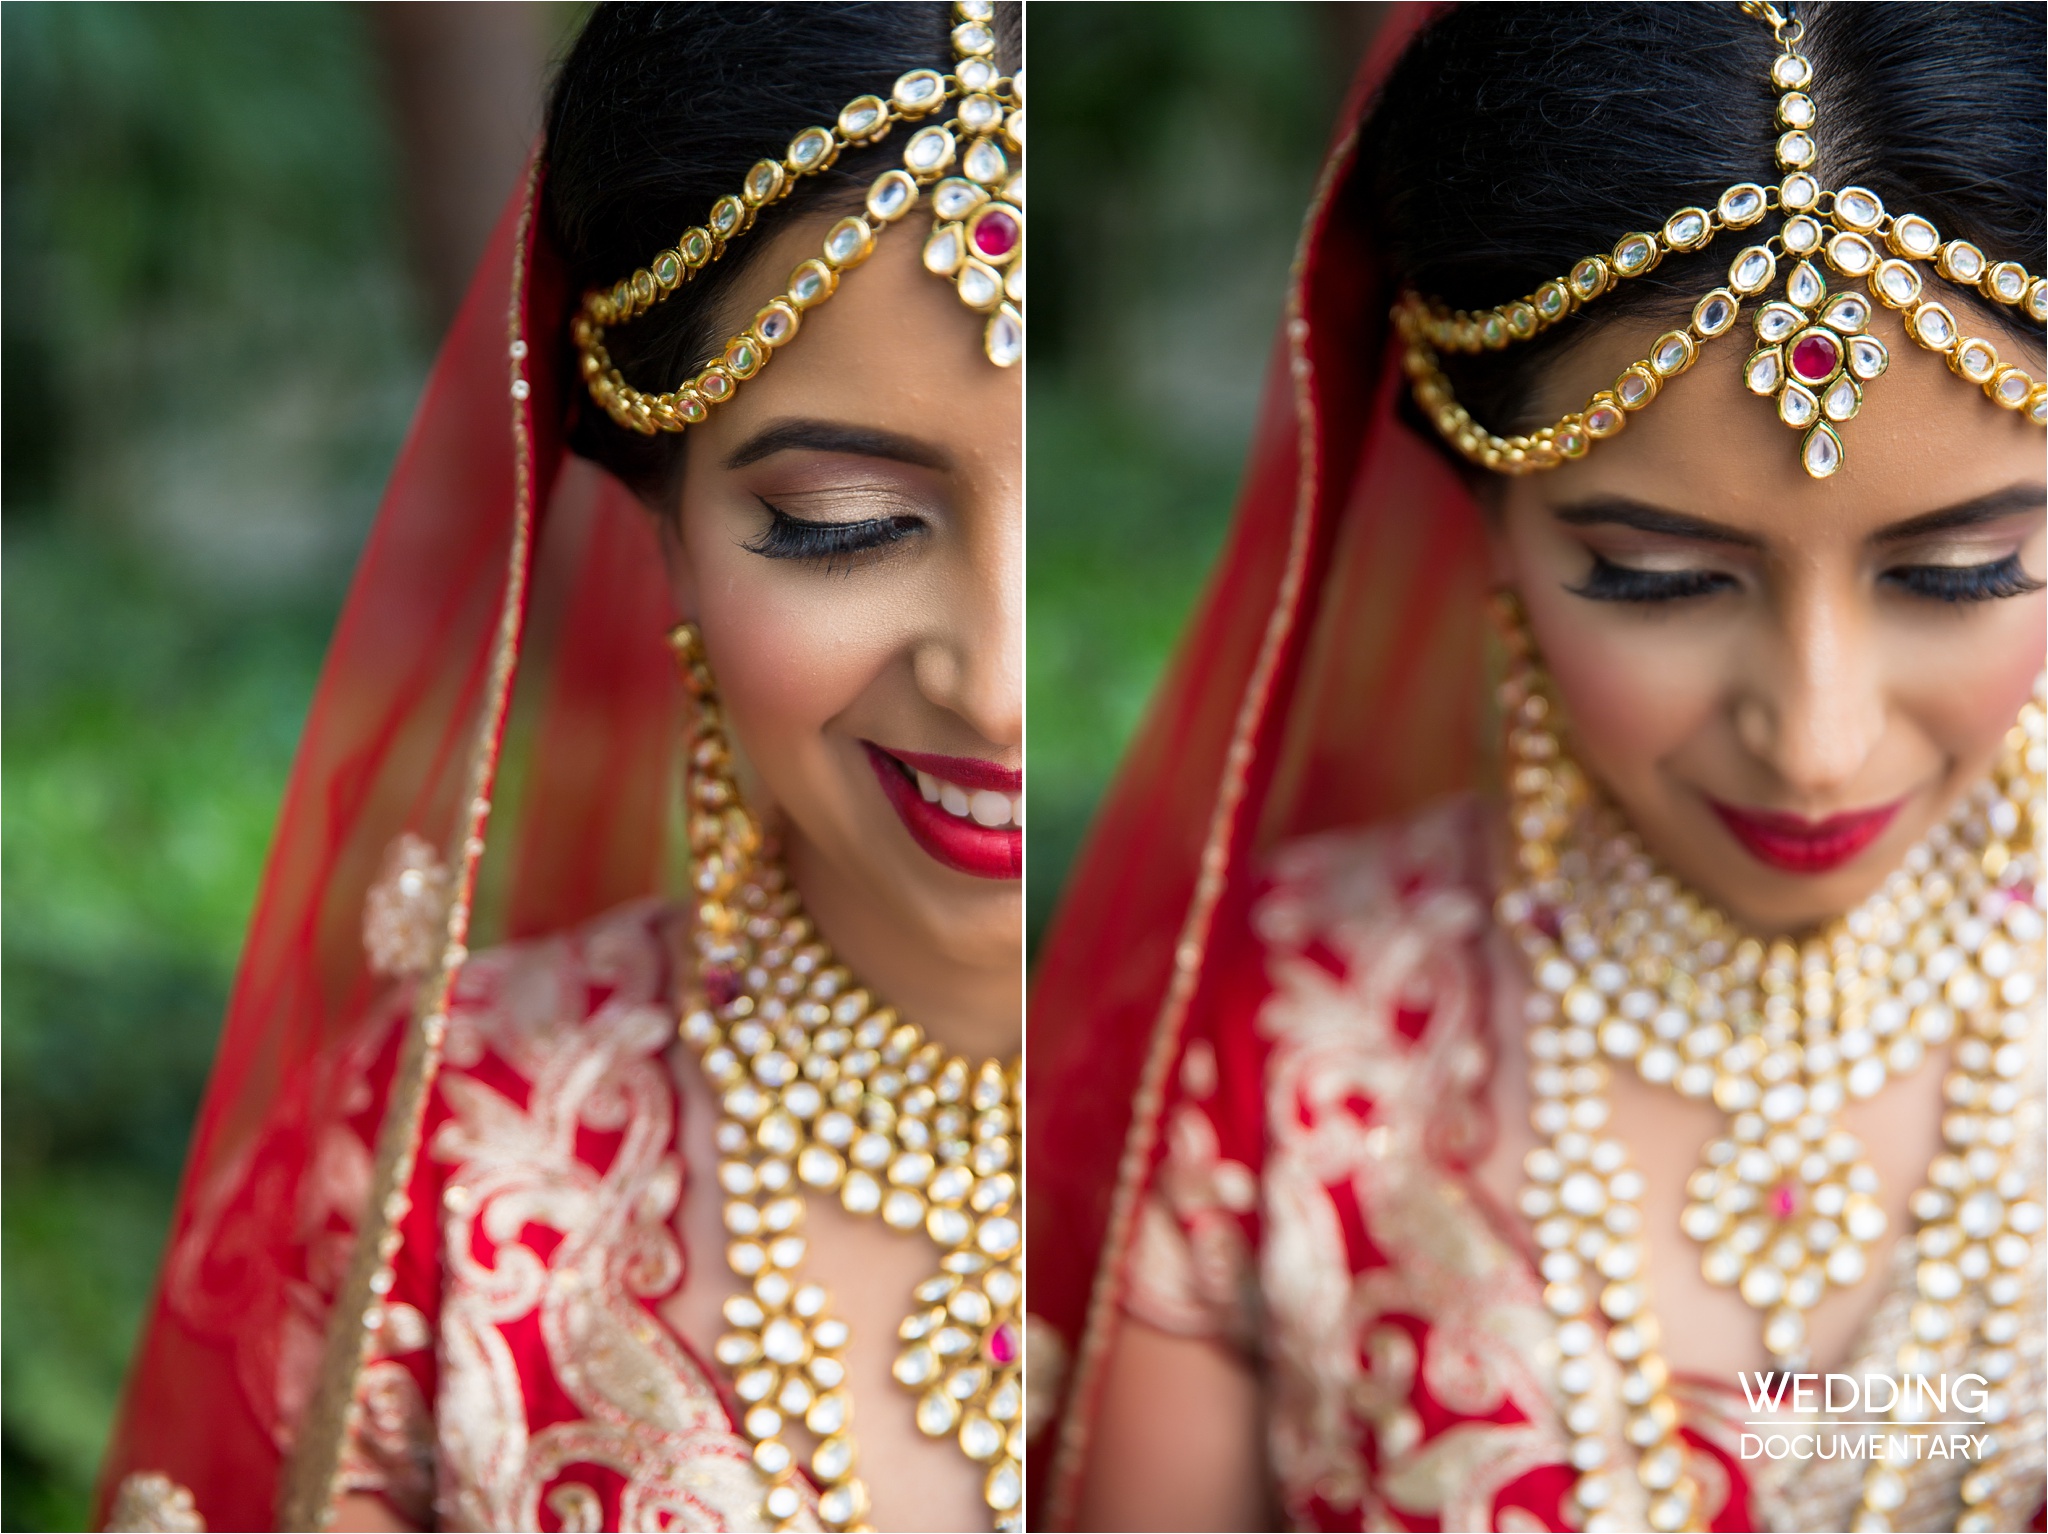 WeddingPhotography/Bride=Bride,